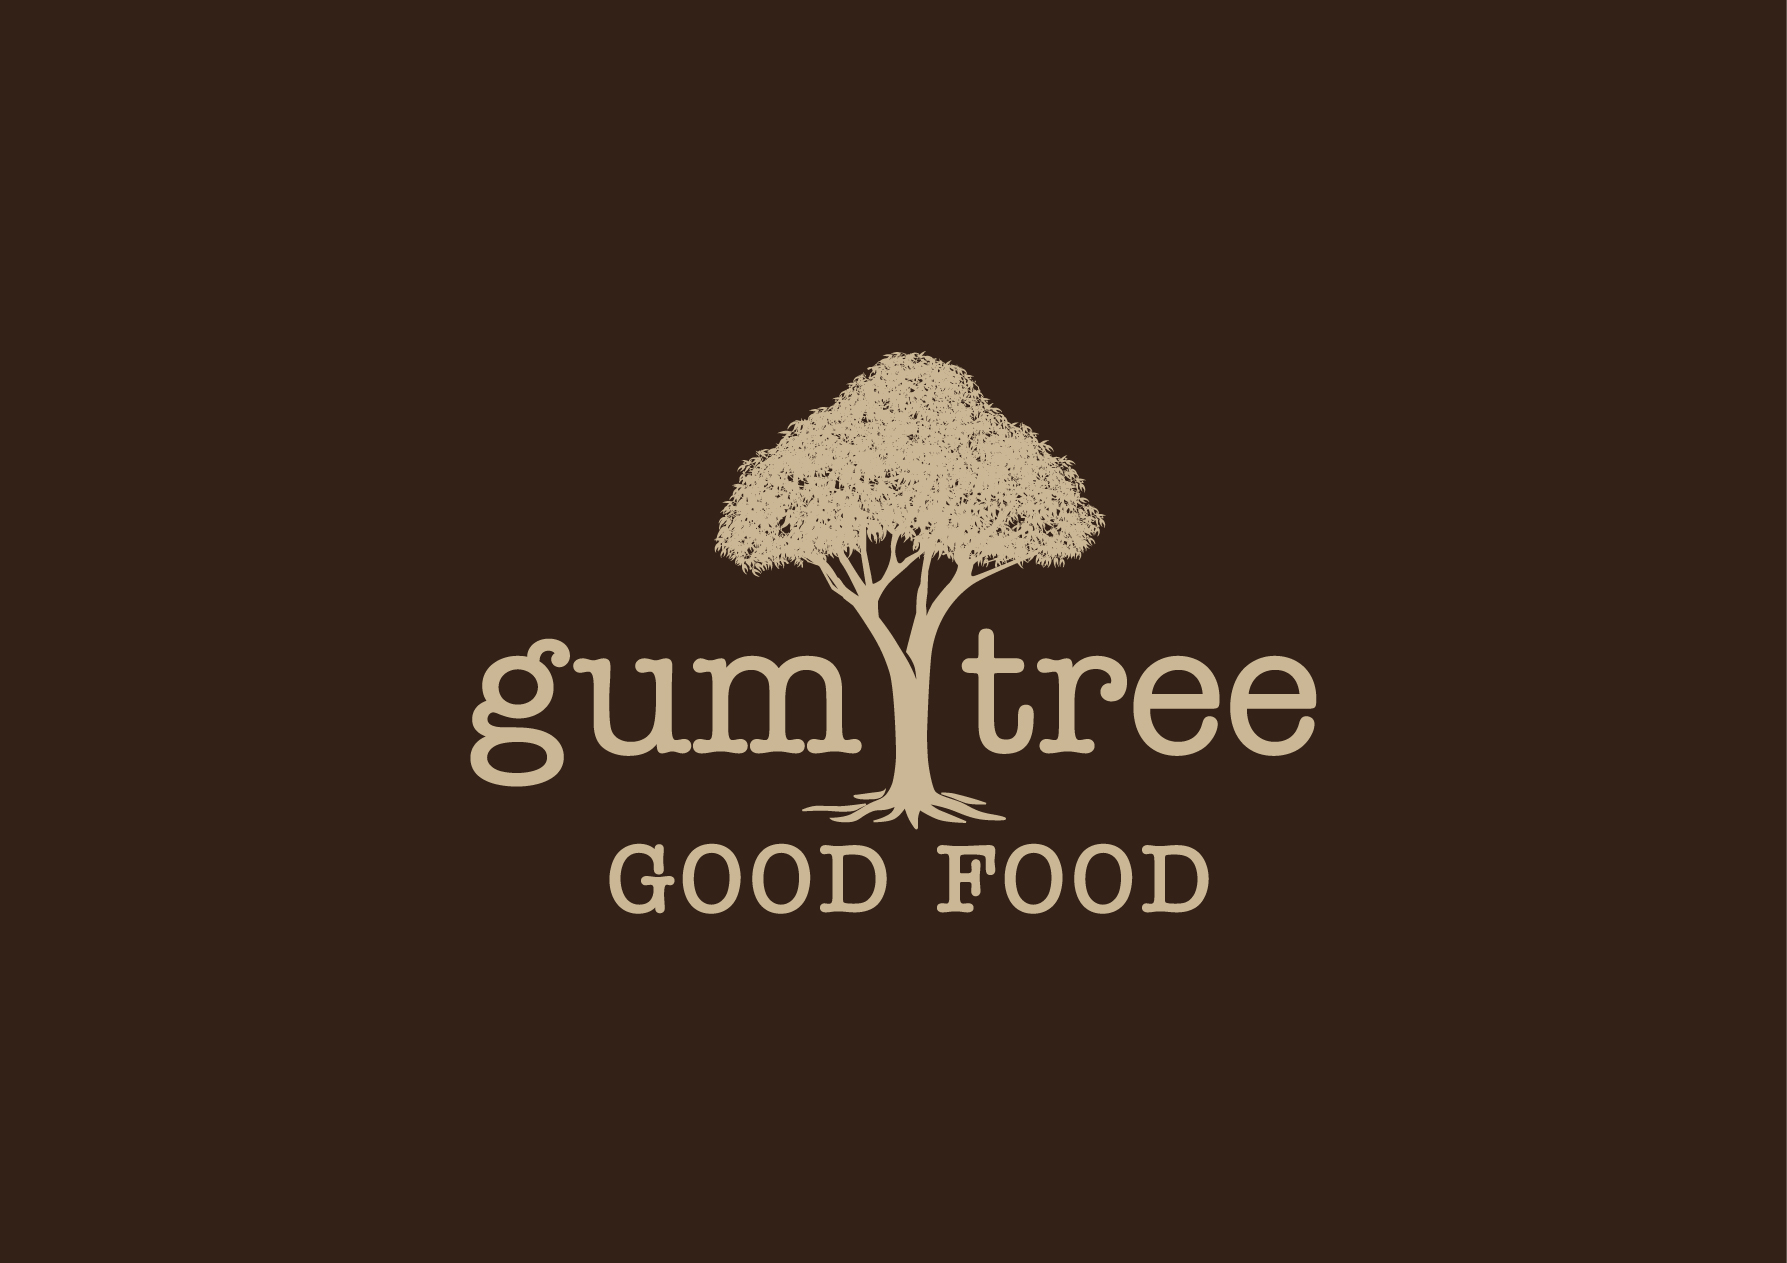 Gum Tree Good Food